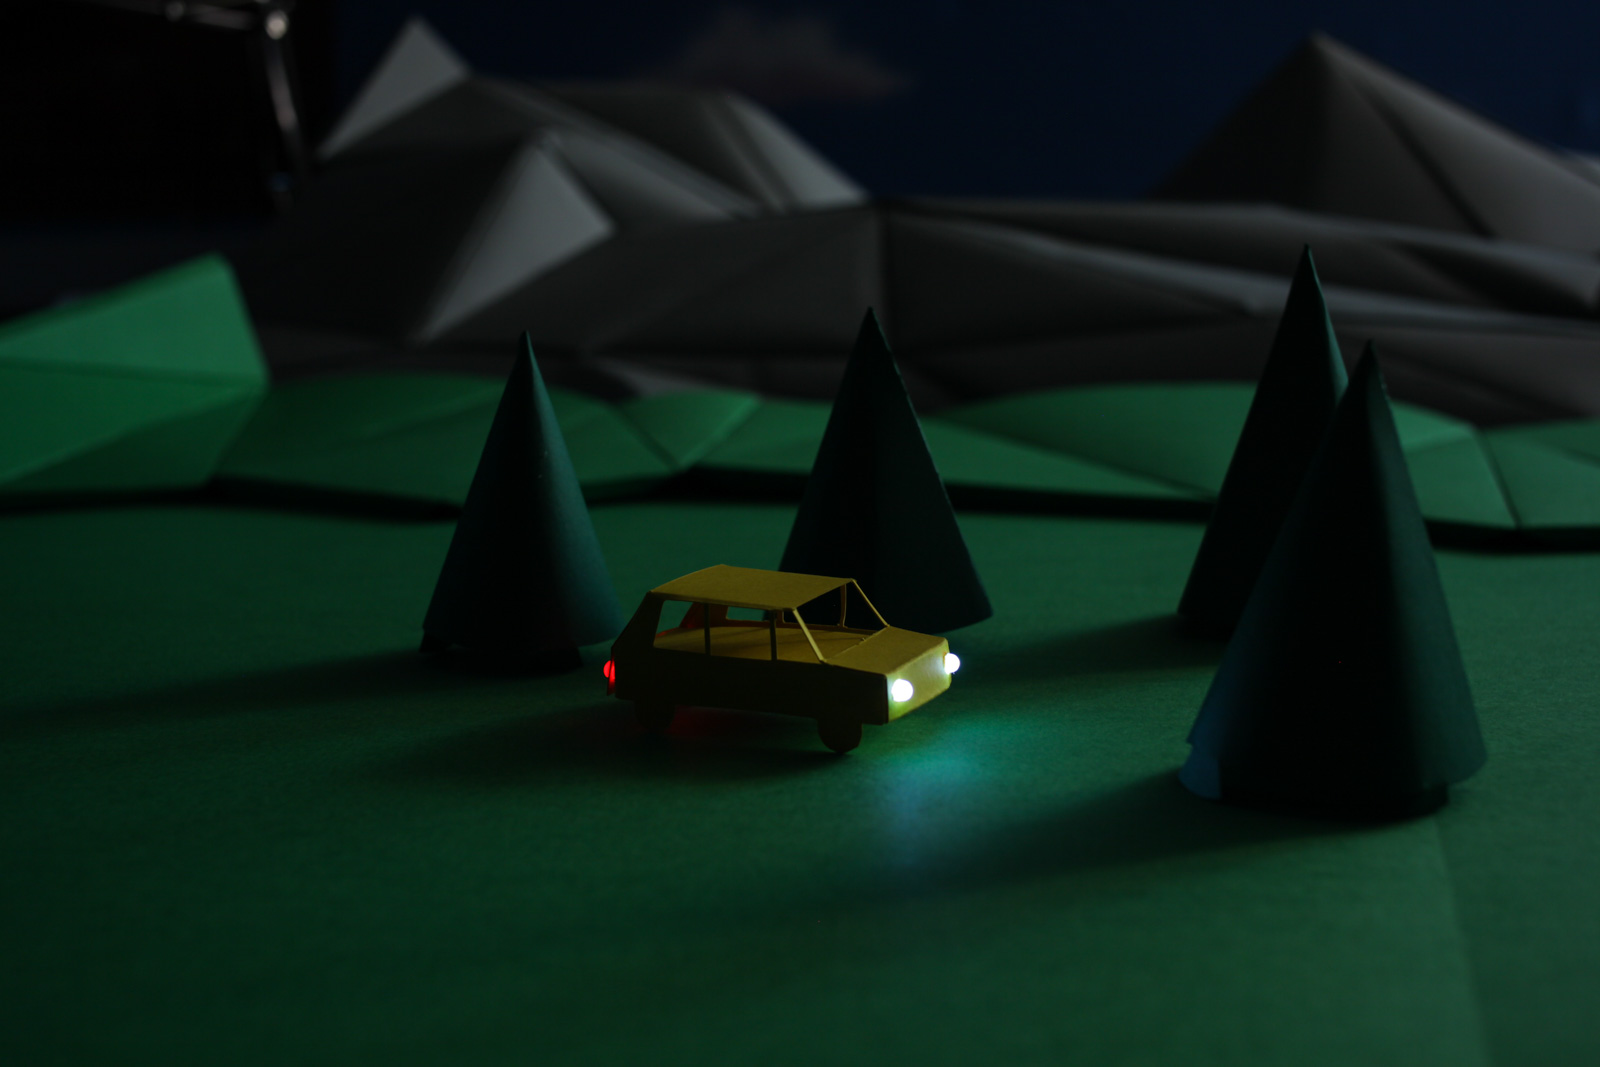 Papierauto mit Beleuchtung in dunkler Landschaft.